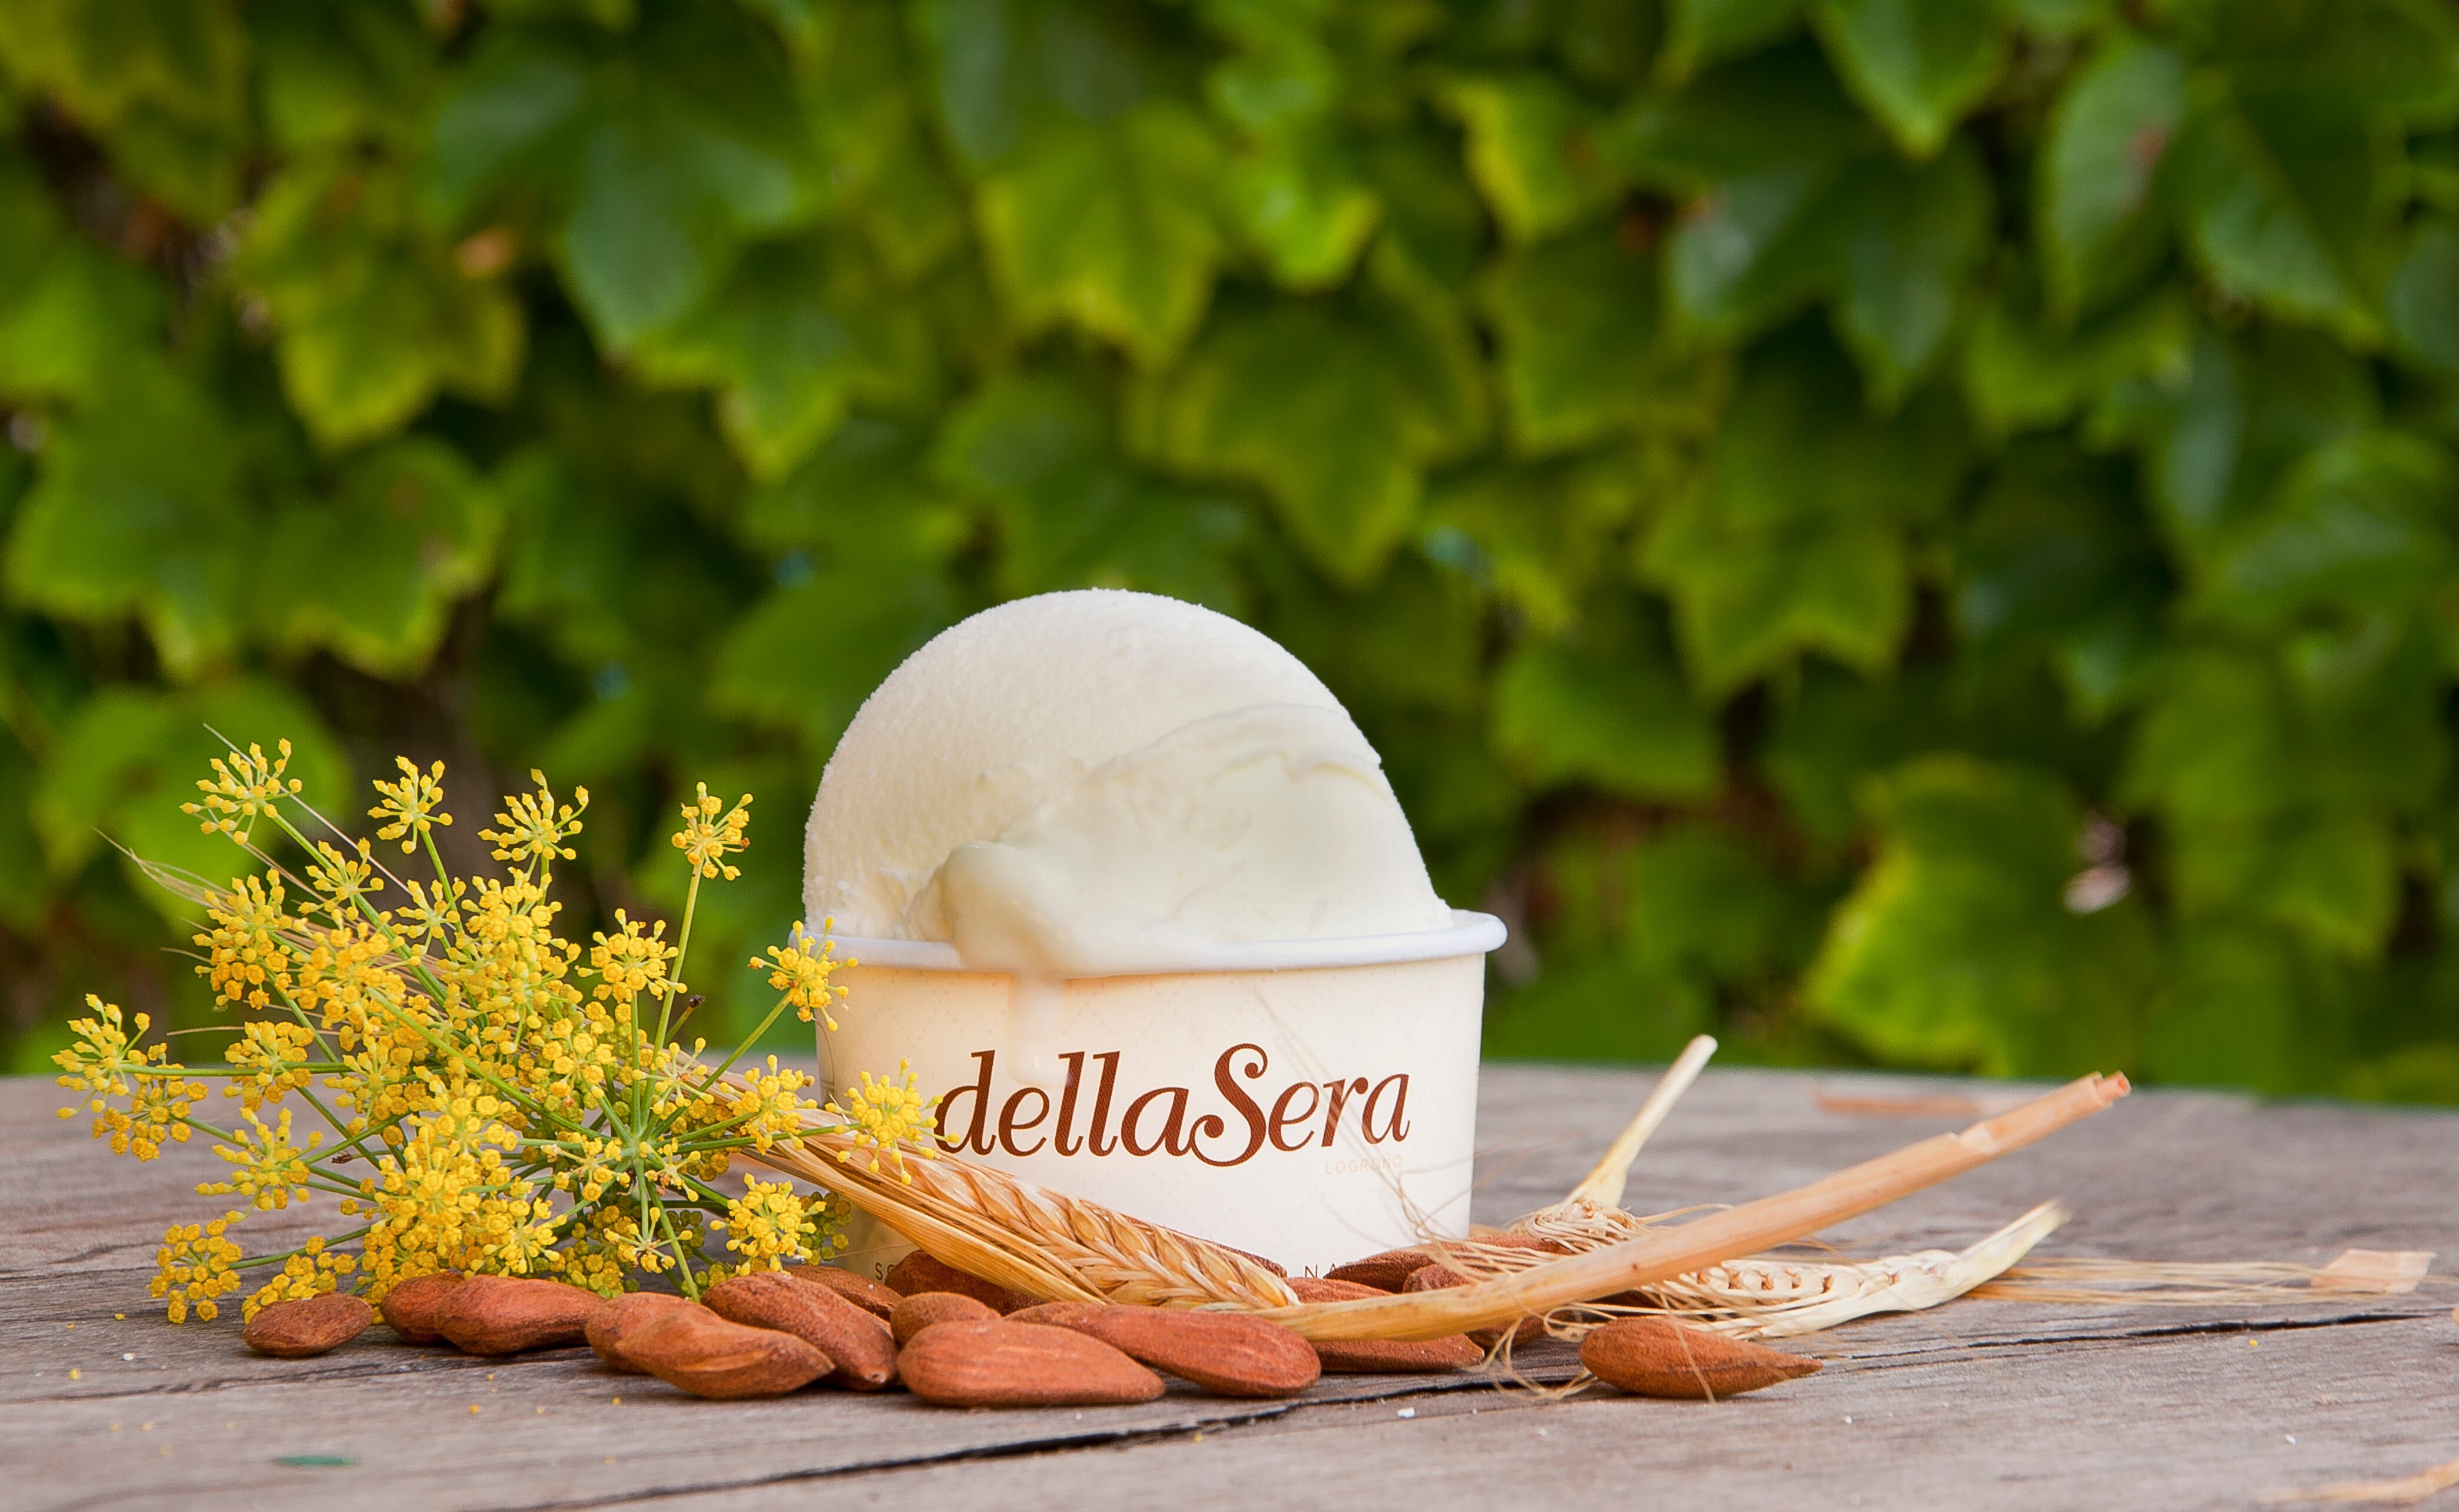 Helado Paseo de verano, de la heladería dellaSera, en Logroño, en una imagen proporcionada por el establecimiento.